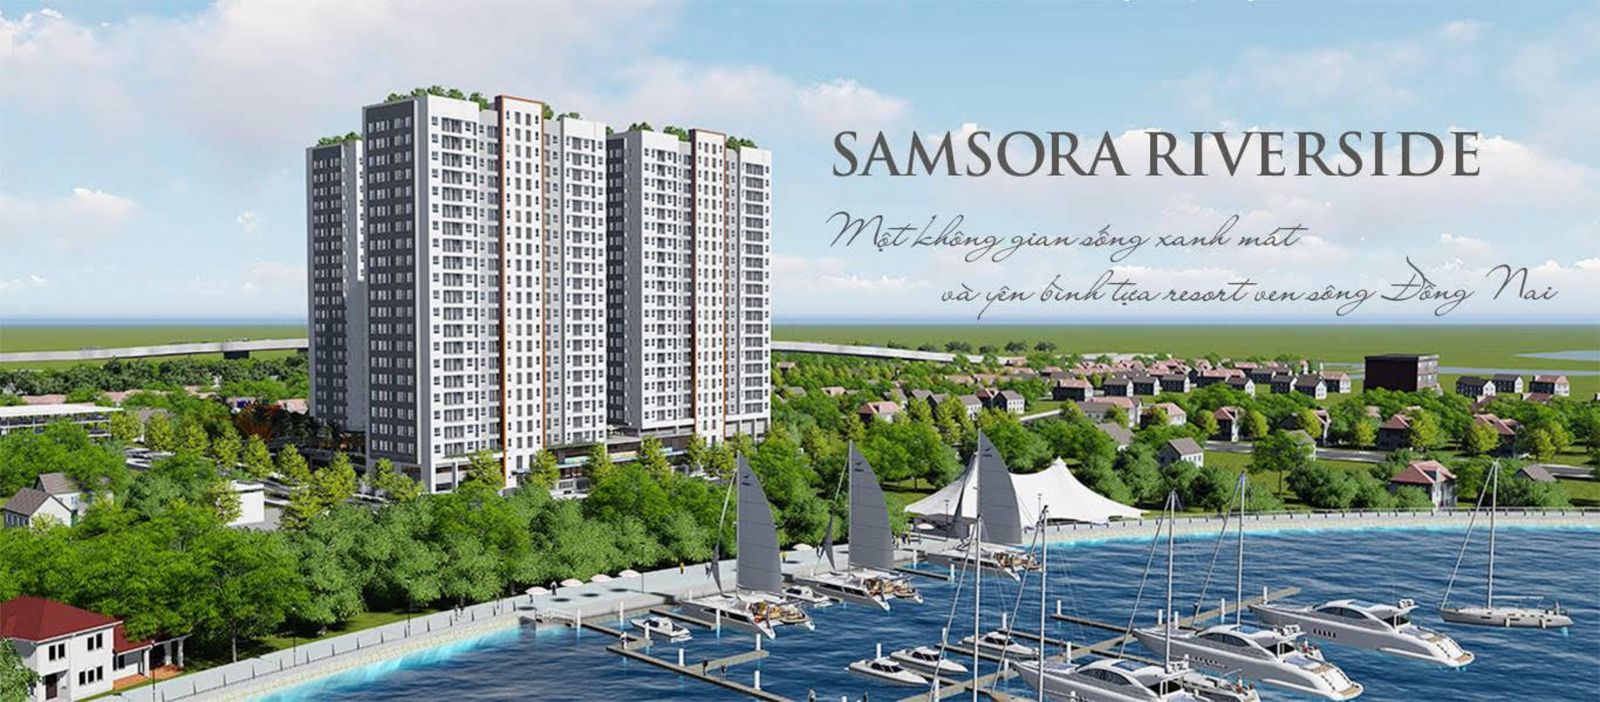 Dự án Samsora Riverside được phổi cảnh hết sức hấp dẫn để quảng cáo lừa khách hàng.